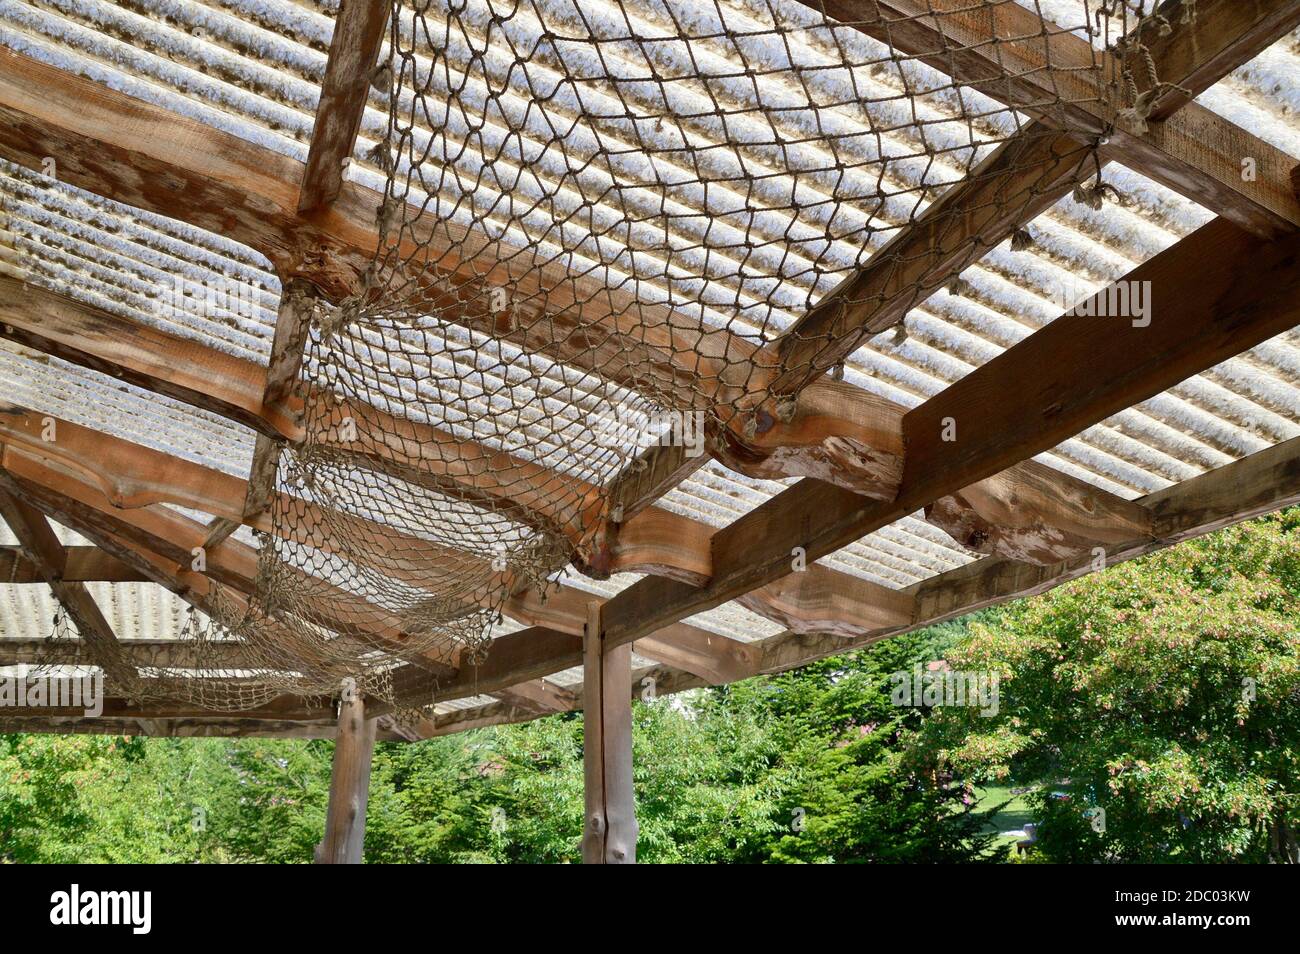 Messa a fuoco selettiva della rete di corda appesa sotto il tetto. Idea creativa per la decorazione del tetto. Foto Stock